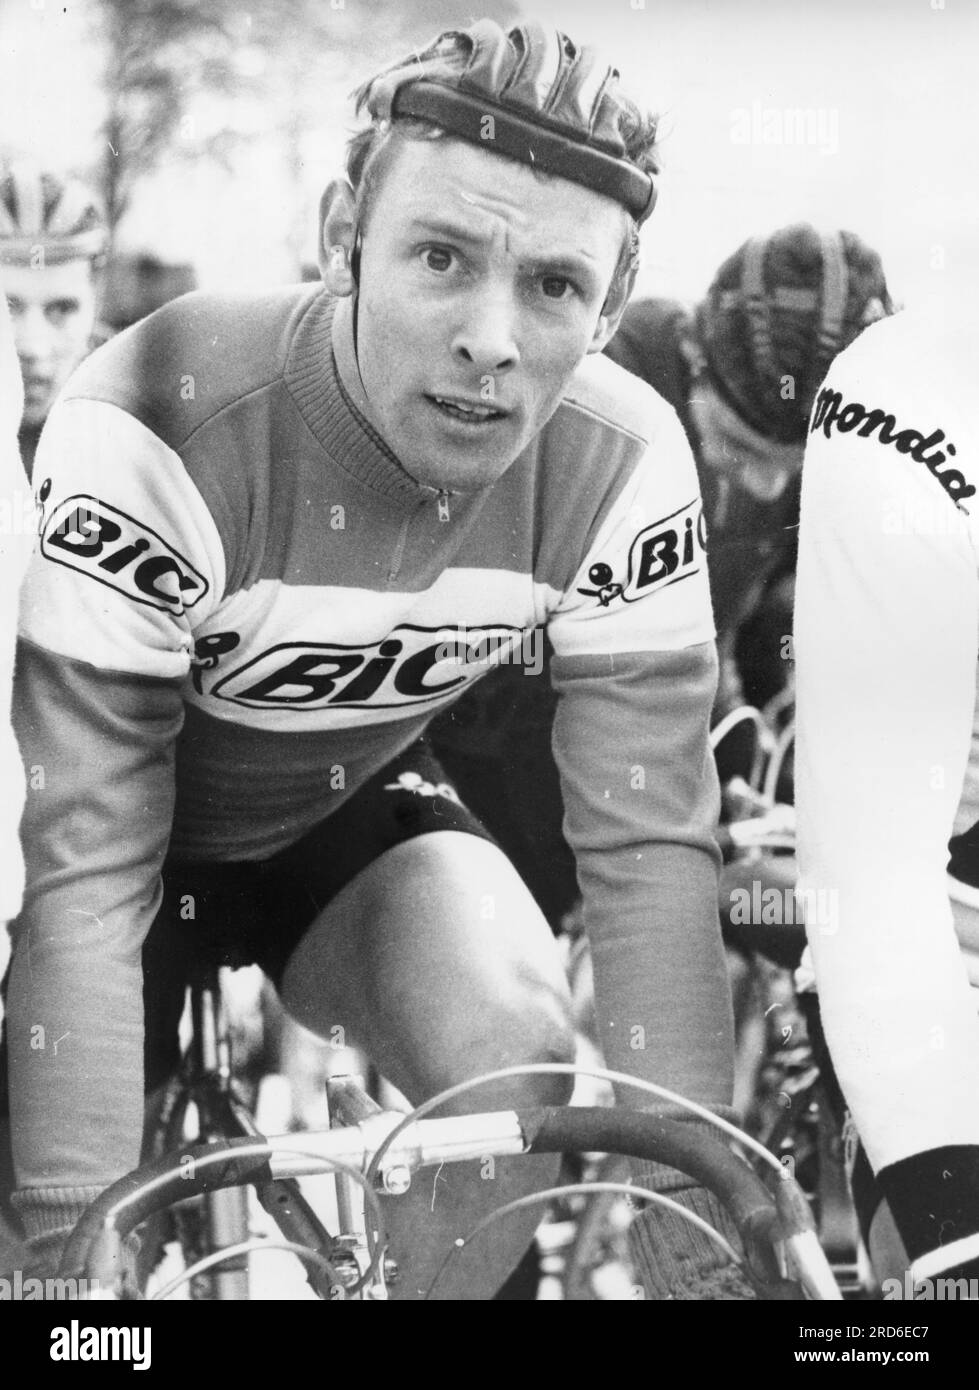 Wolfshohl, Rolf, * 27.12.1938, athlète allemand (coureur cycliste), lors de la course de cross-country, 1967, INFORMATIONS-AUTORISATION-DROITS-SUPPLÉMENTAIRES-NON-DISPONIBLES Banque D'Images